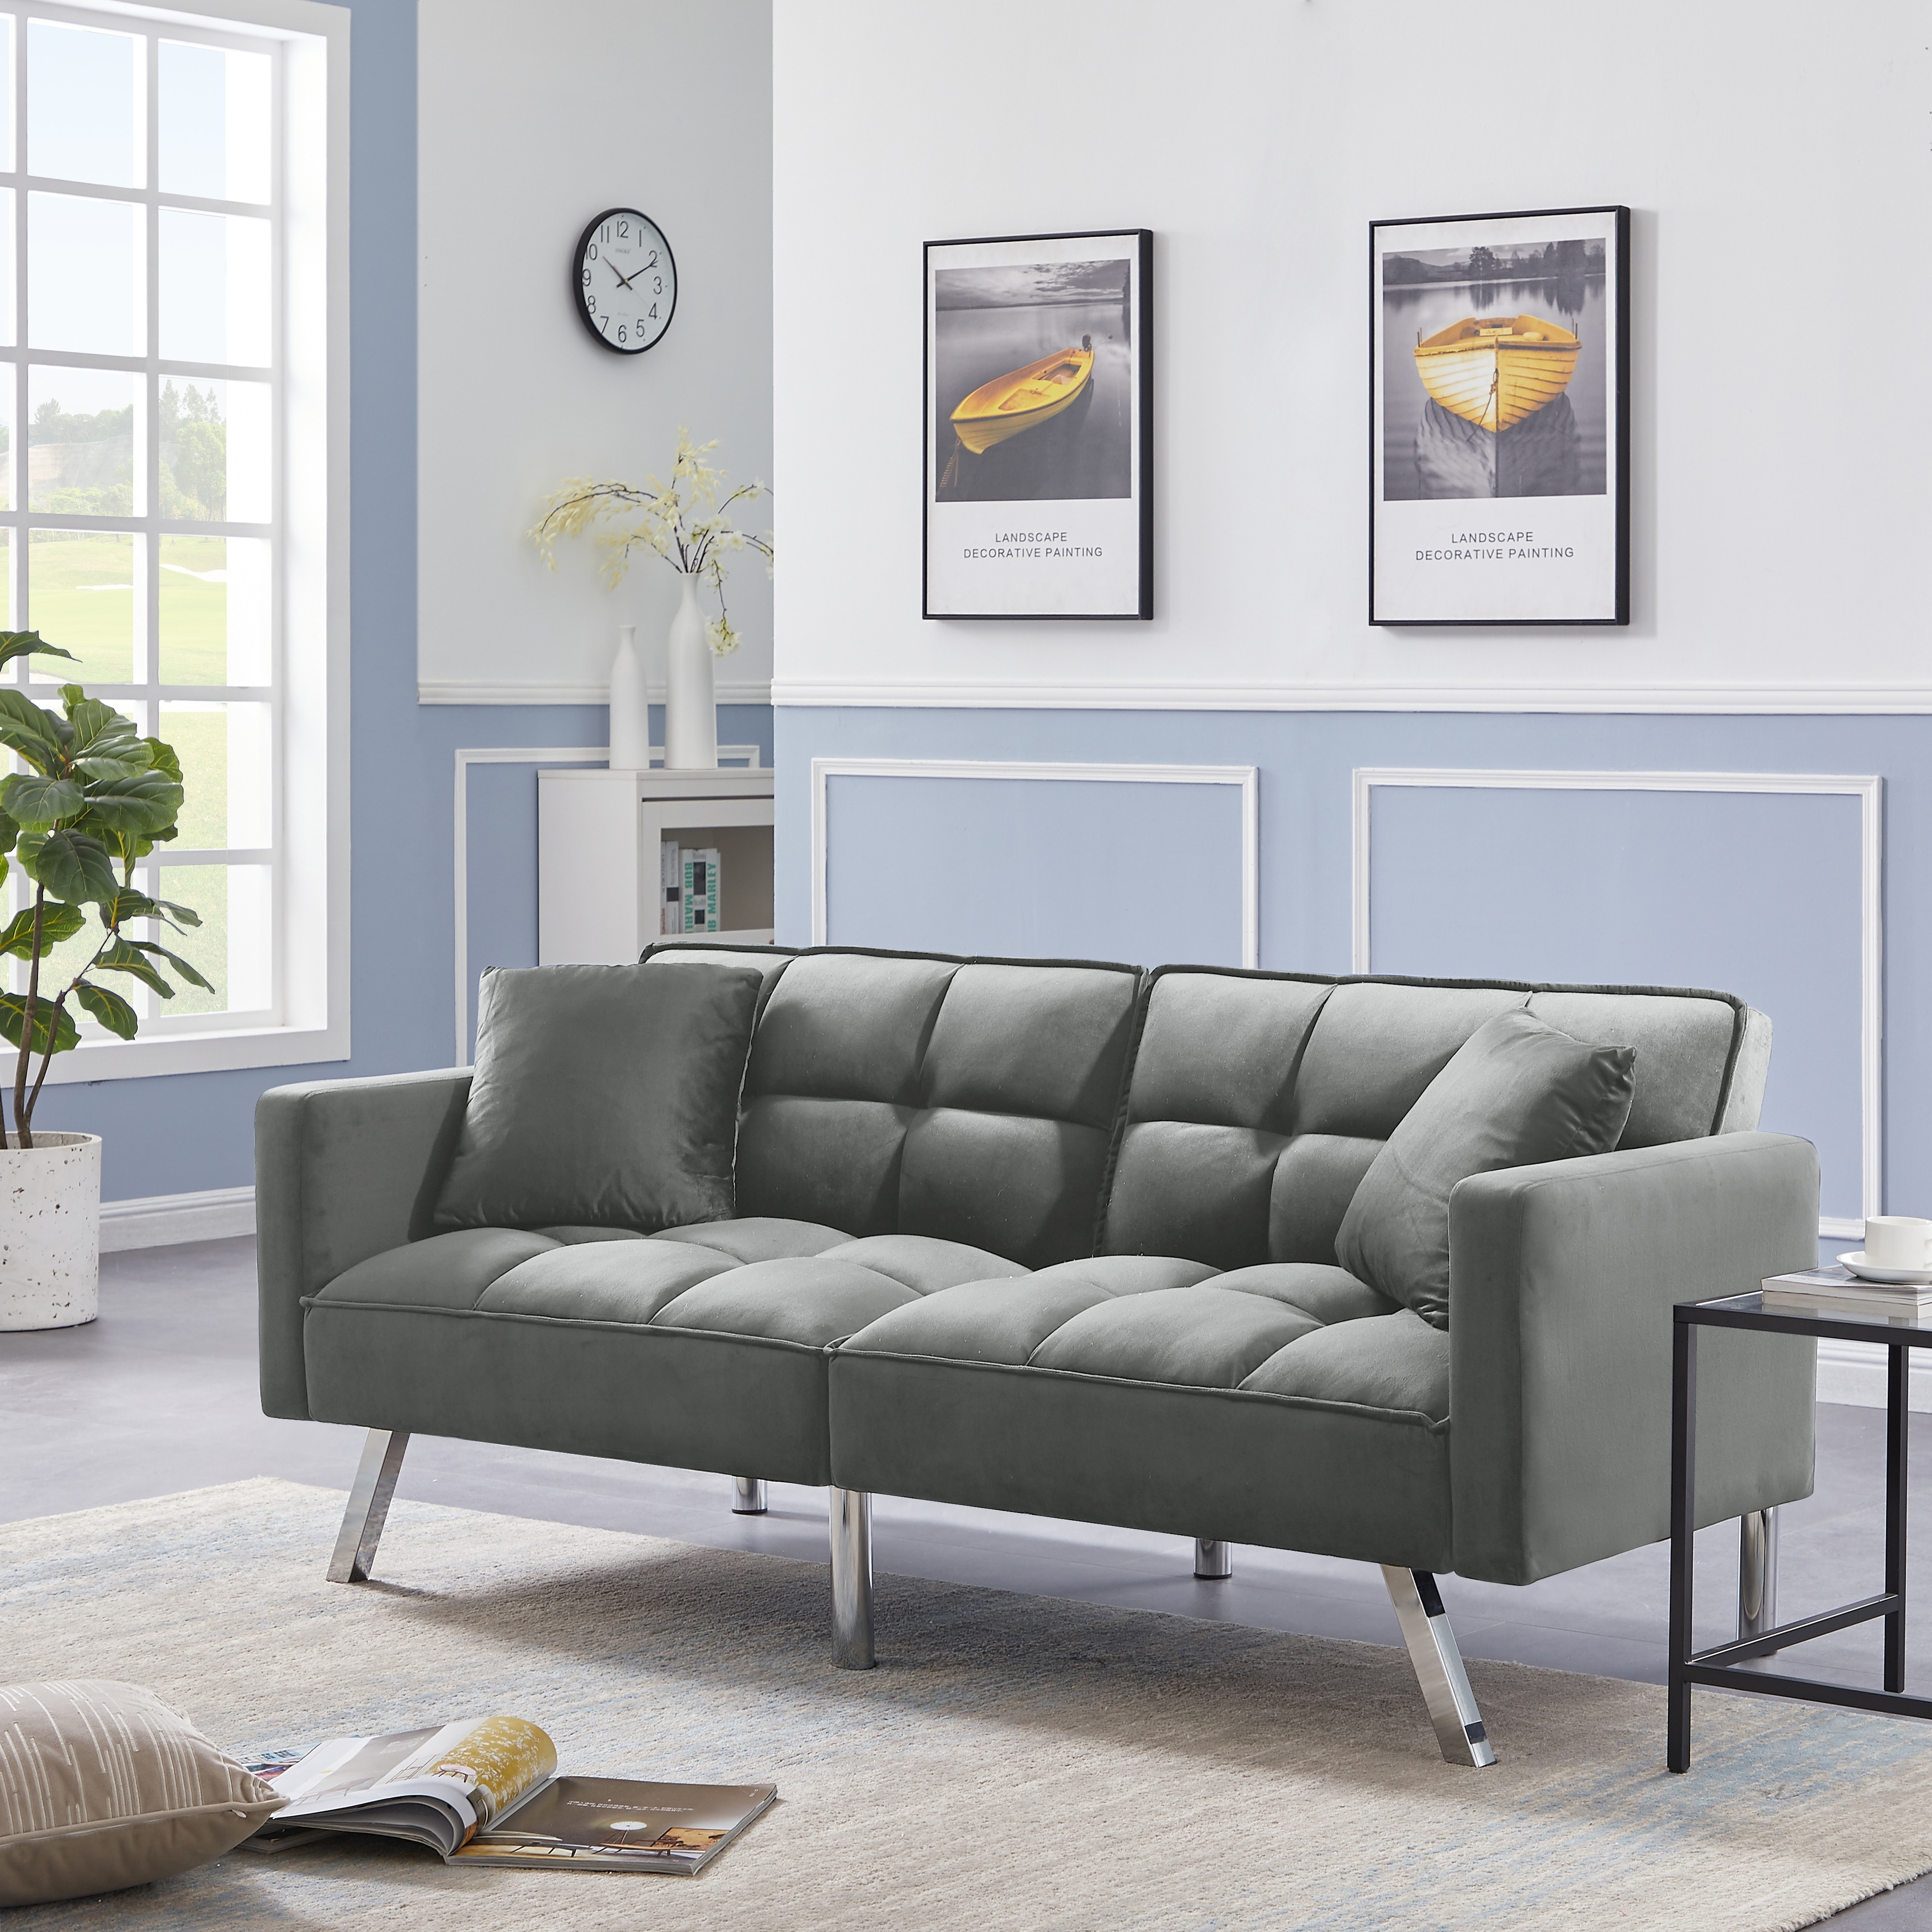 Modern Loveseat Adjustable Tilt Backrest Metal Sofa Convertible Sleeper Velvet Upholstered Sofa Furniture With Pillows